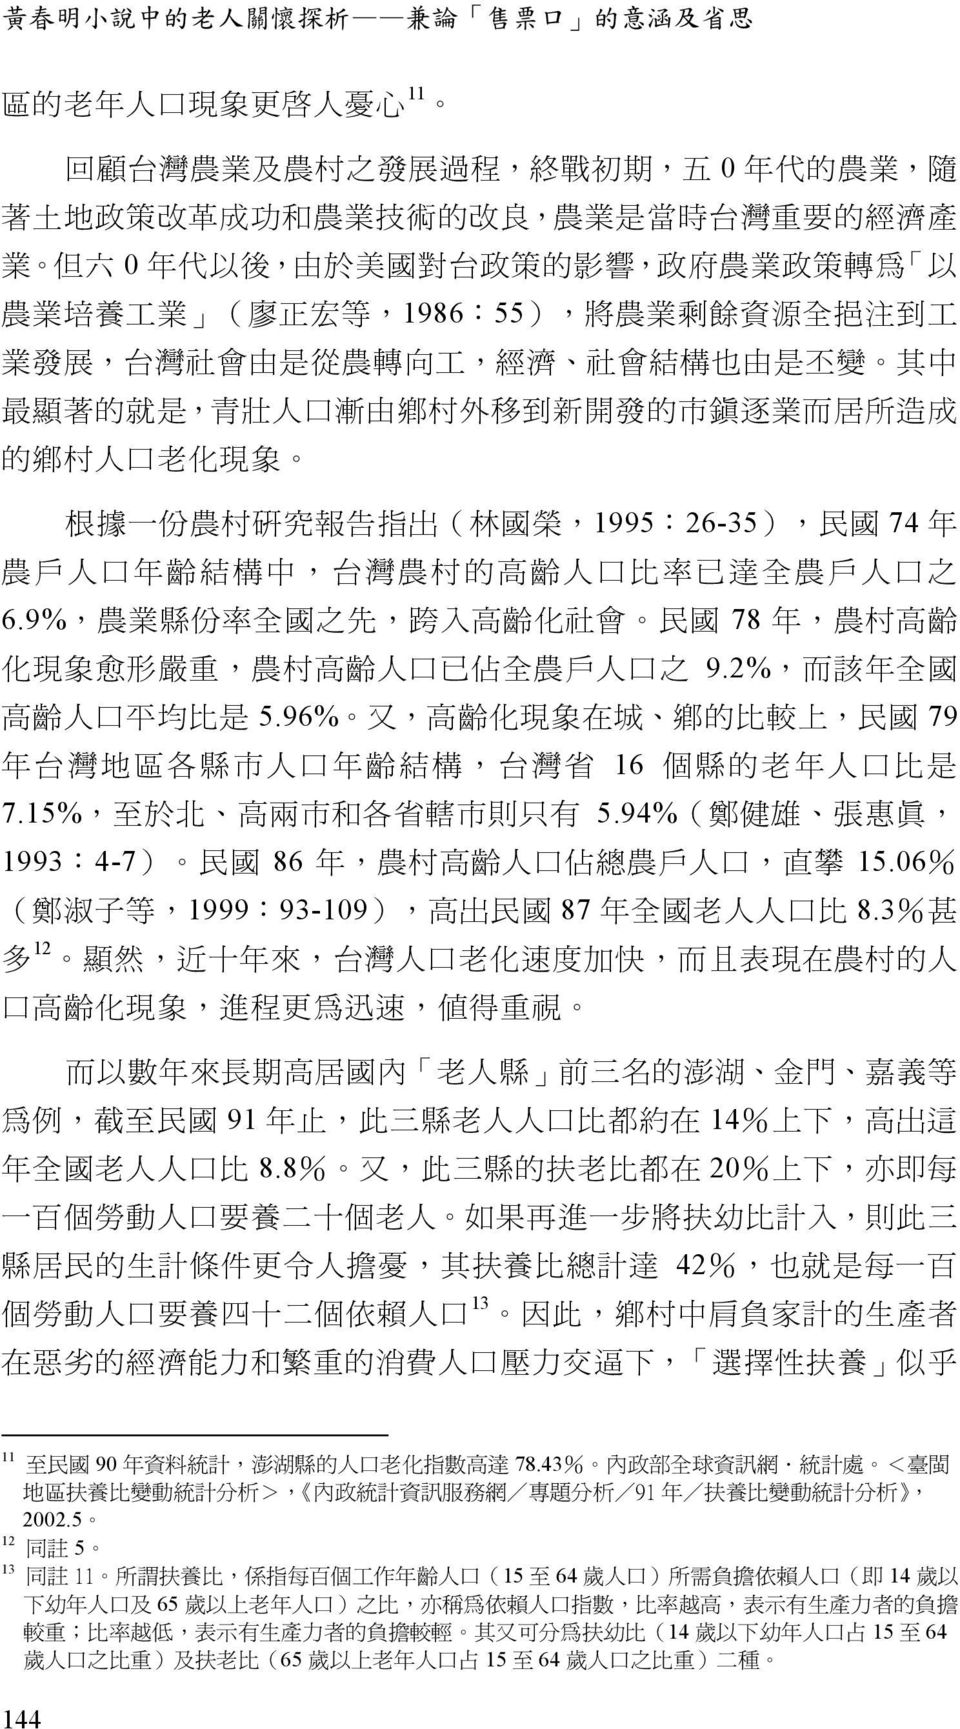 新 開 發 的 市 鎮 逐 業 而 居 所 造 成 的 鄉 村 人 口 老 化 現 象 根 據 一 份 農 村 研 究 報 告 指 出 ( 林 國 榮,1995:26-35), 民 國 74 年 農 戶 人 口 年 齡 結 構 中, 台 灣 農 村 的 高 齡 人 口 比 率 已 達 全 農 戶 人 口 之 6.